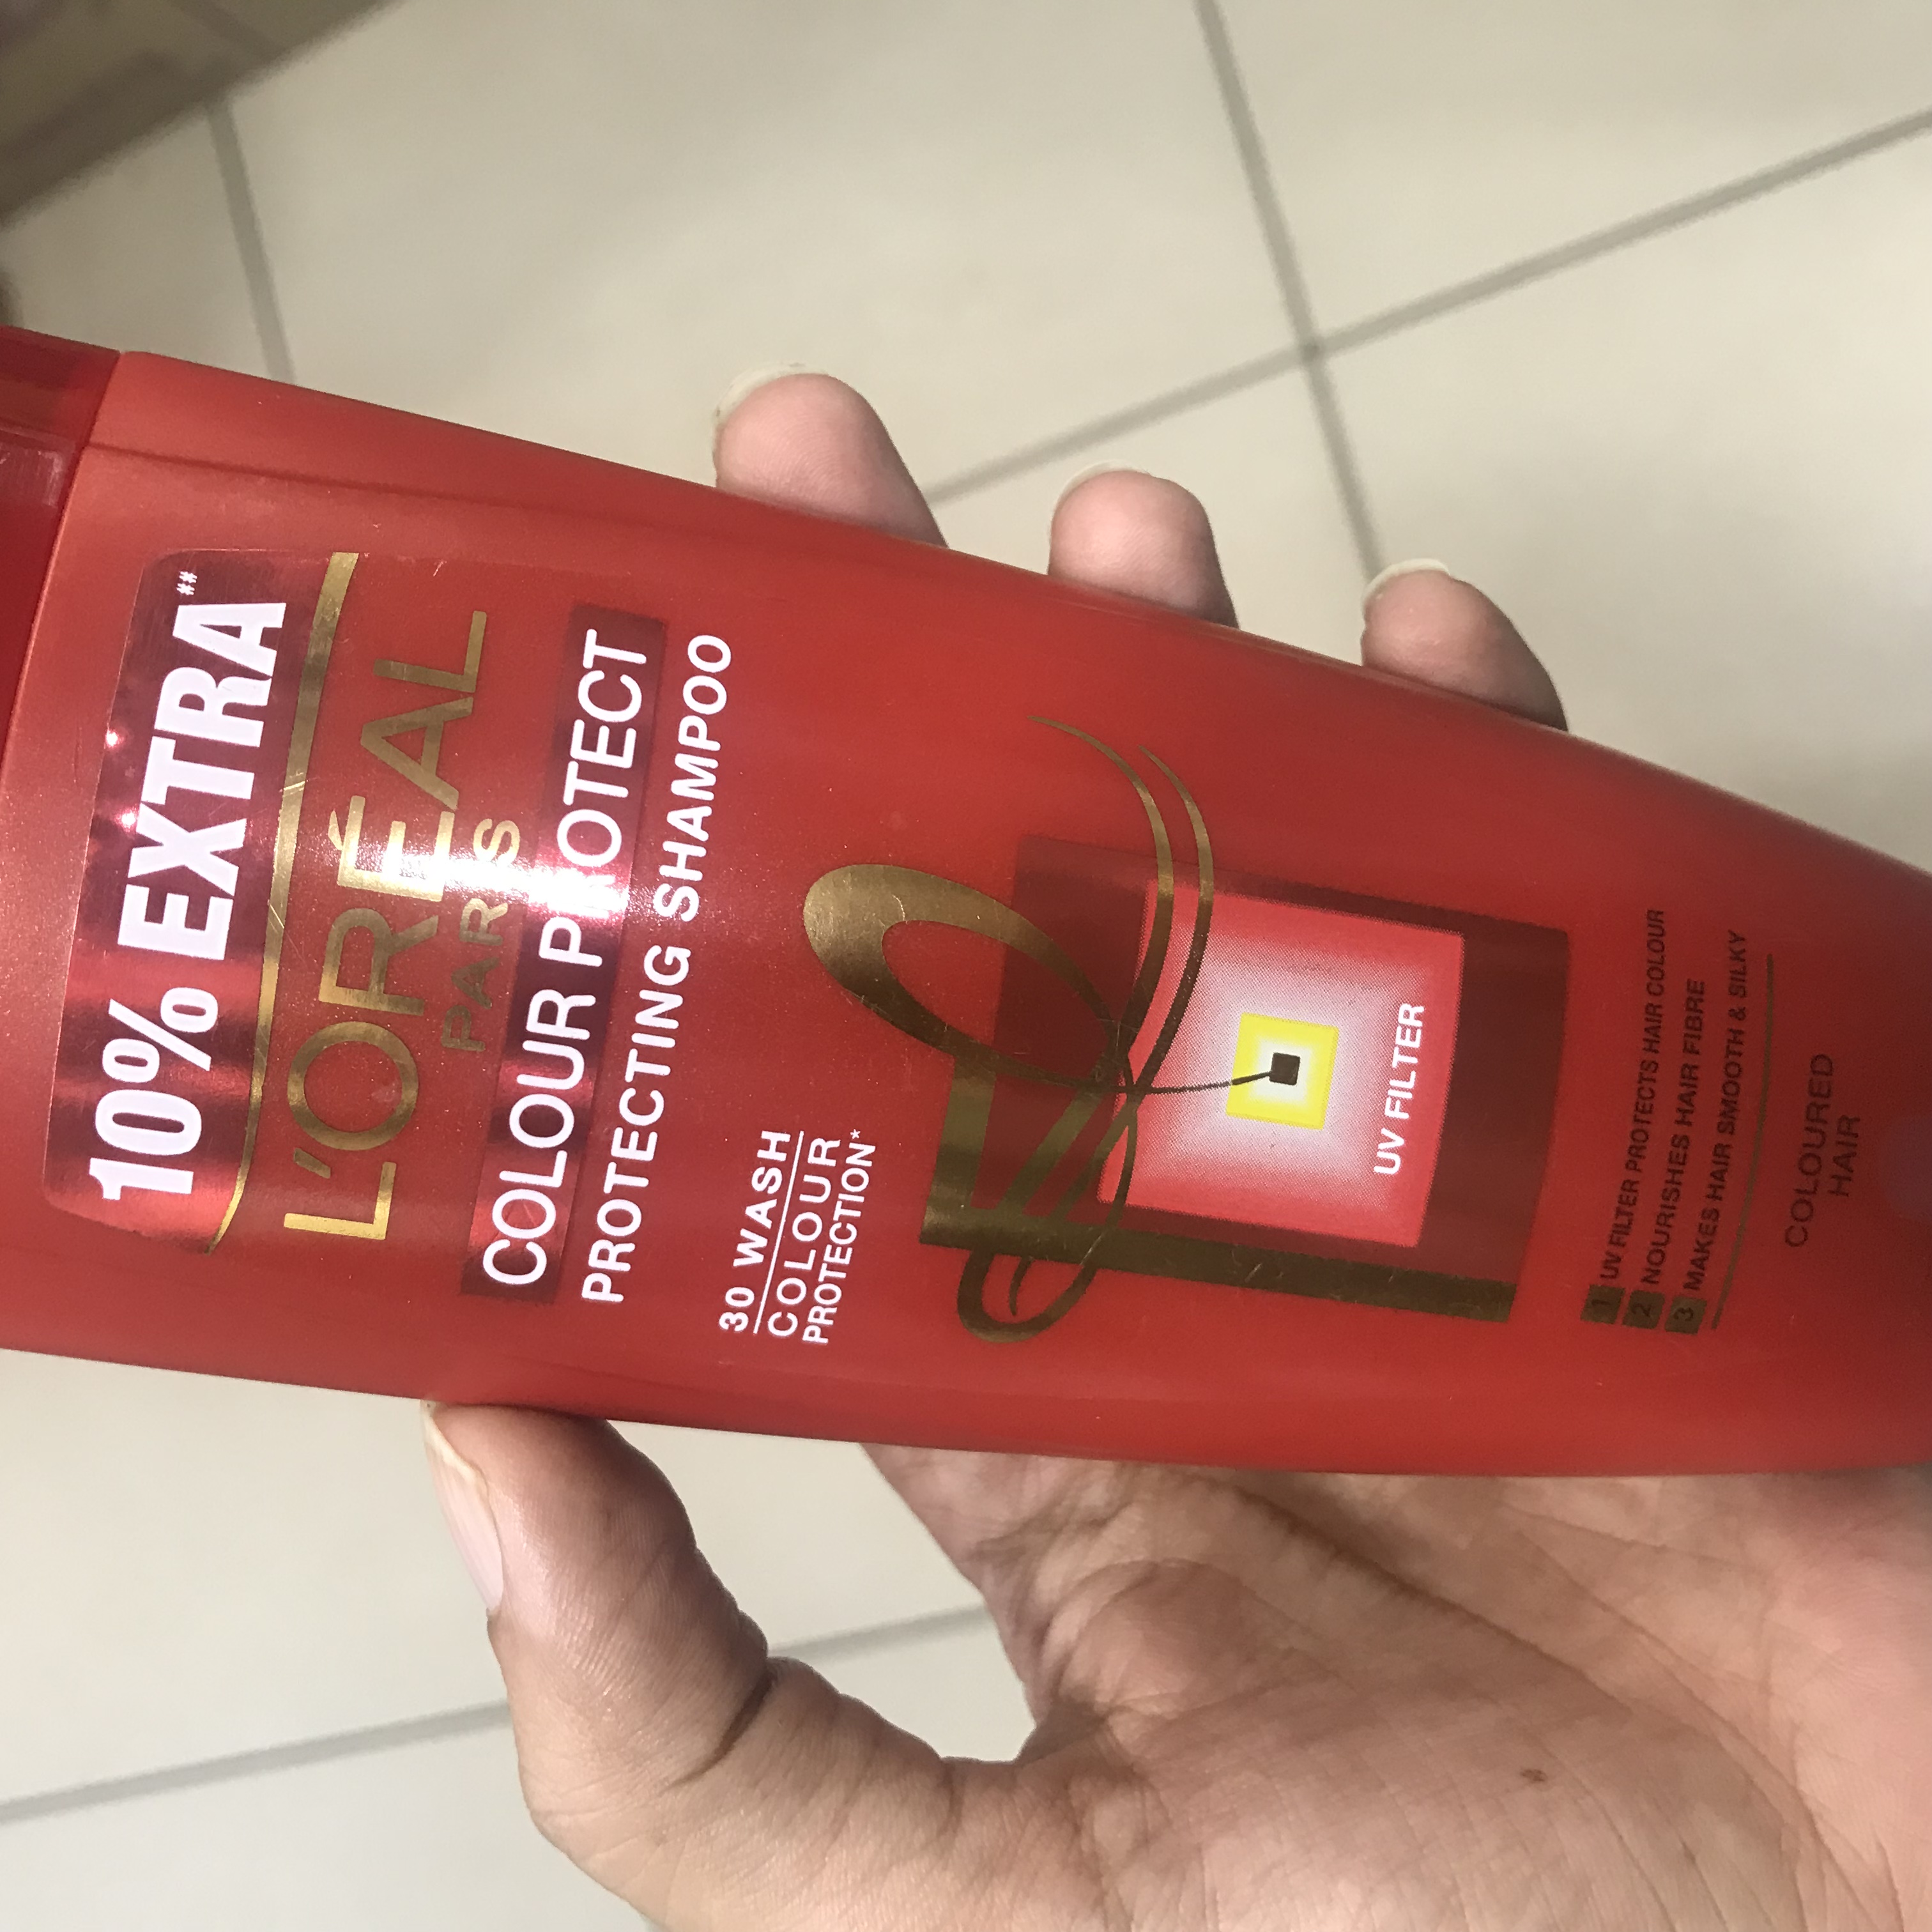 L’Oreal Paris Colour Protect Shampoo Reviews, Ingredients, Benefits